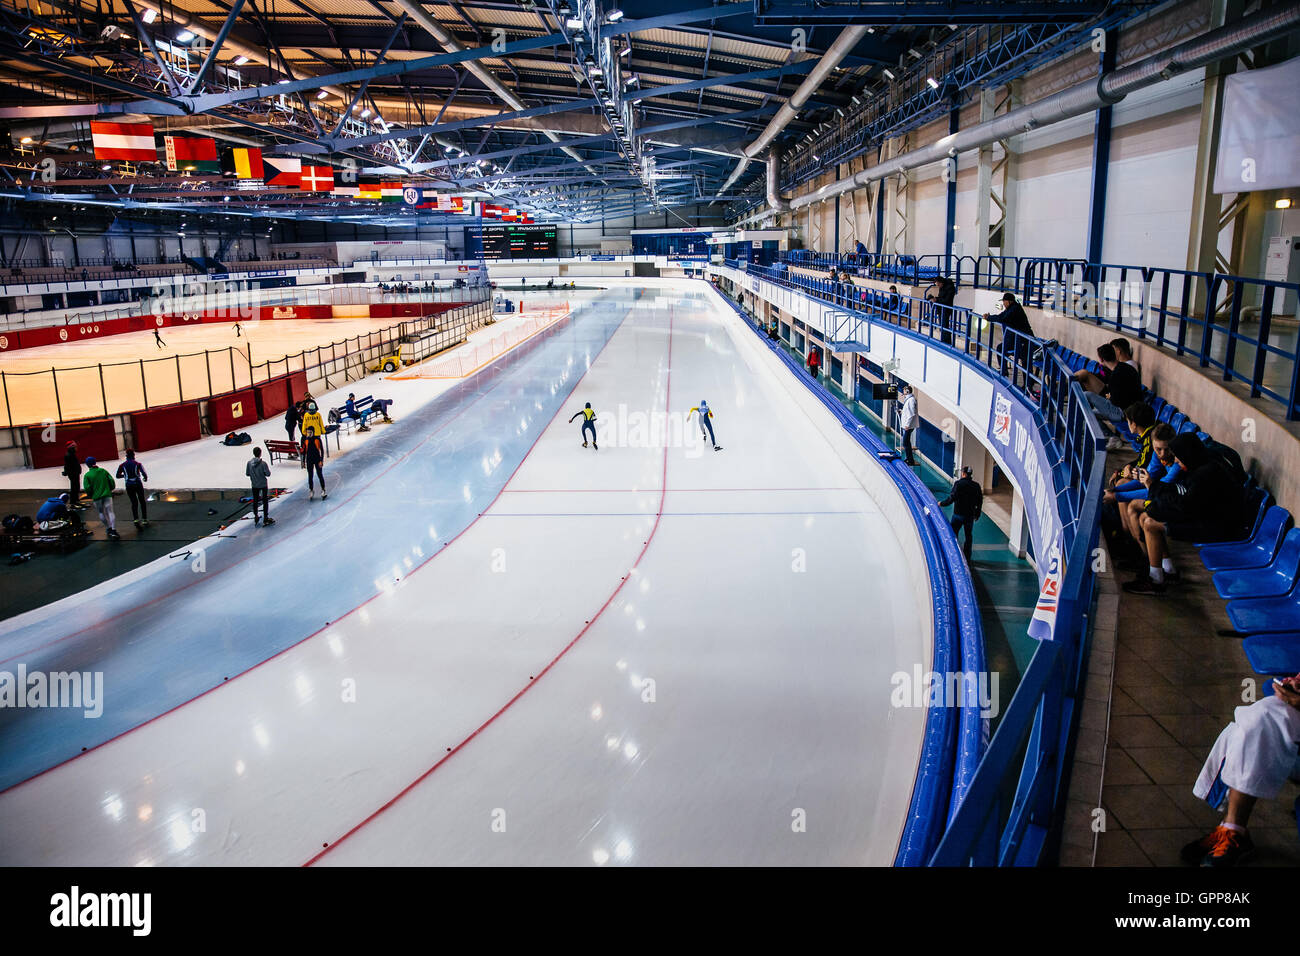 Plan général d'ice arena en été Tasse en patinage de vitesse Banque D'Images